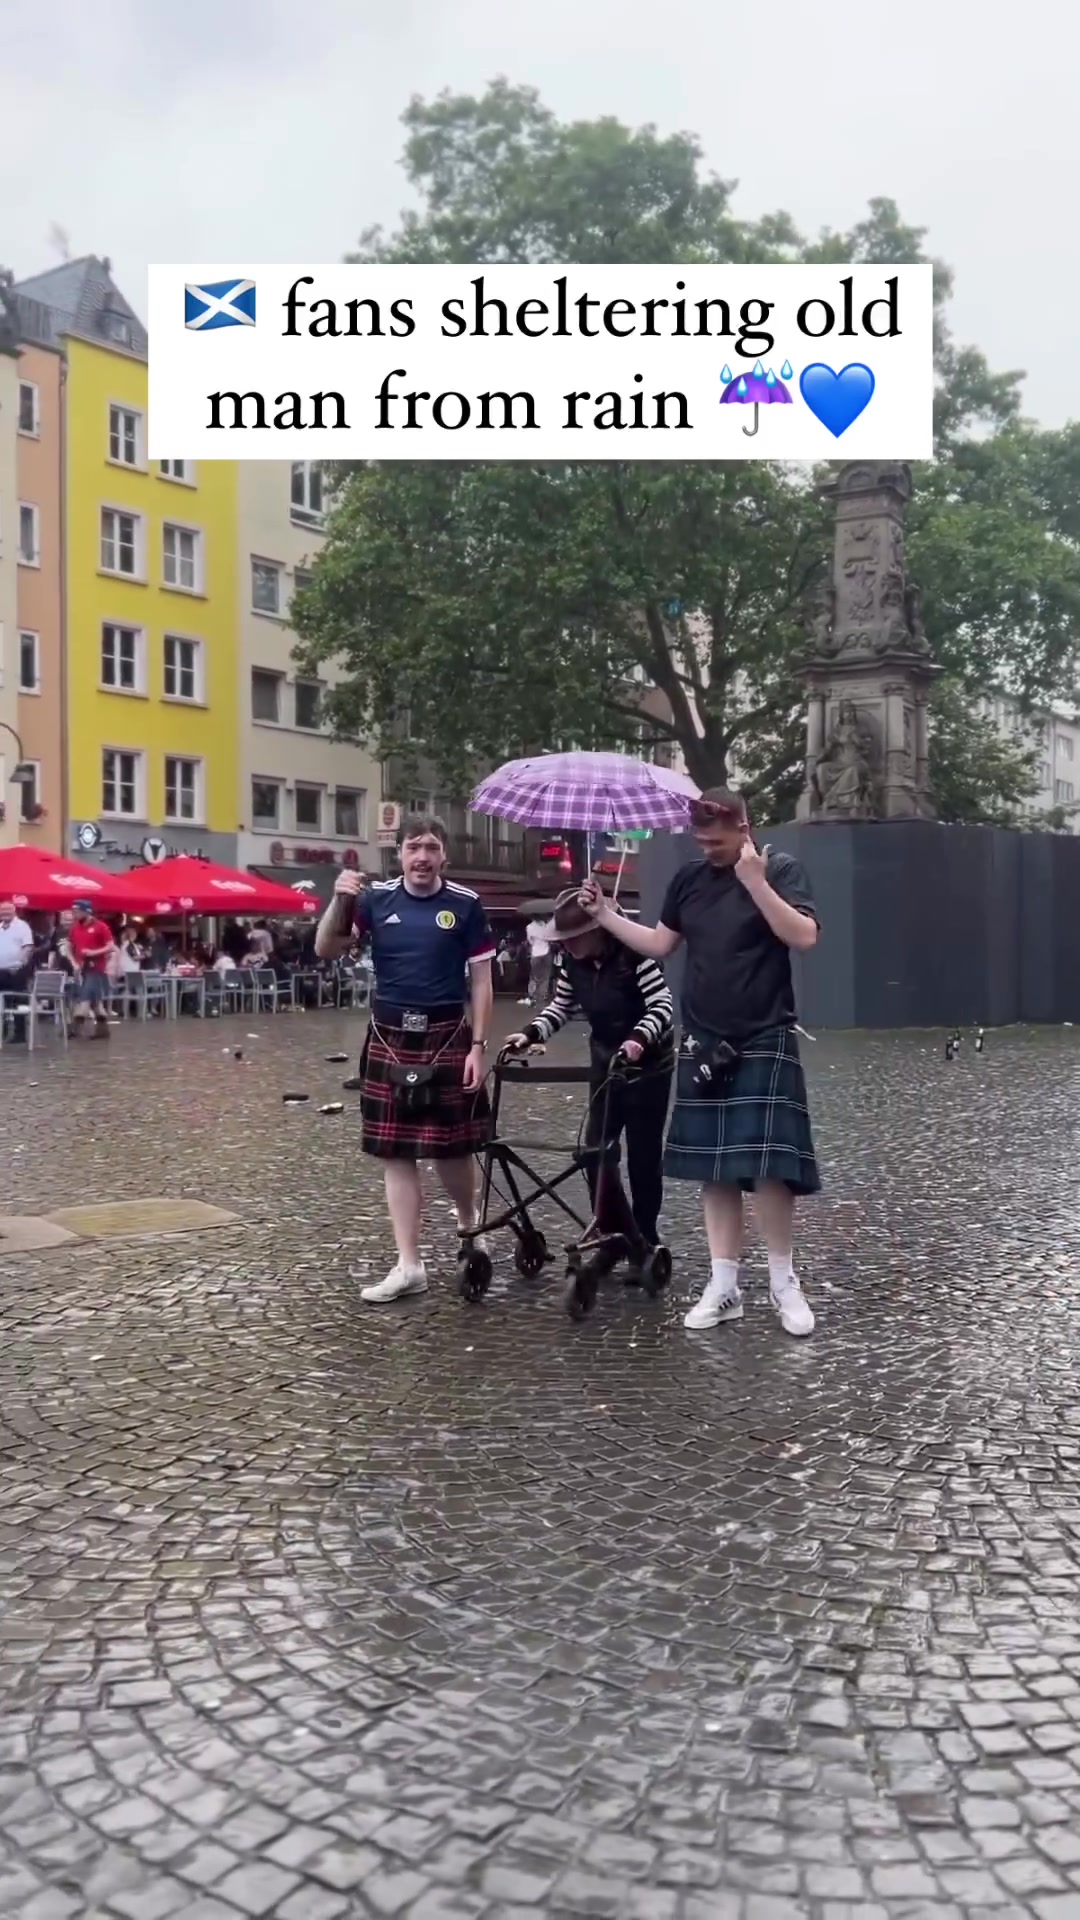 优质球迷苏格兰球迷雨中为老人撑伞前行